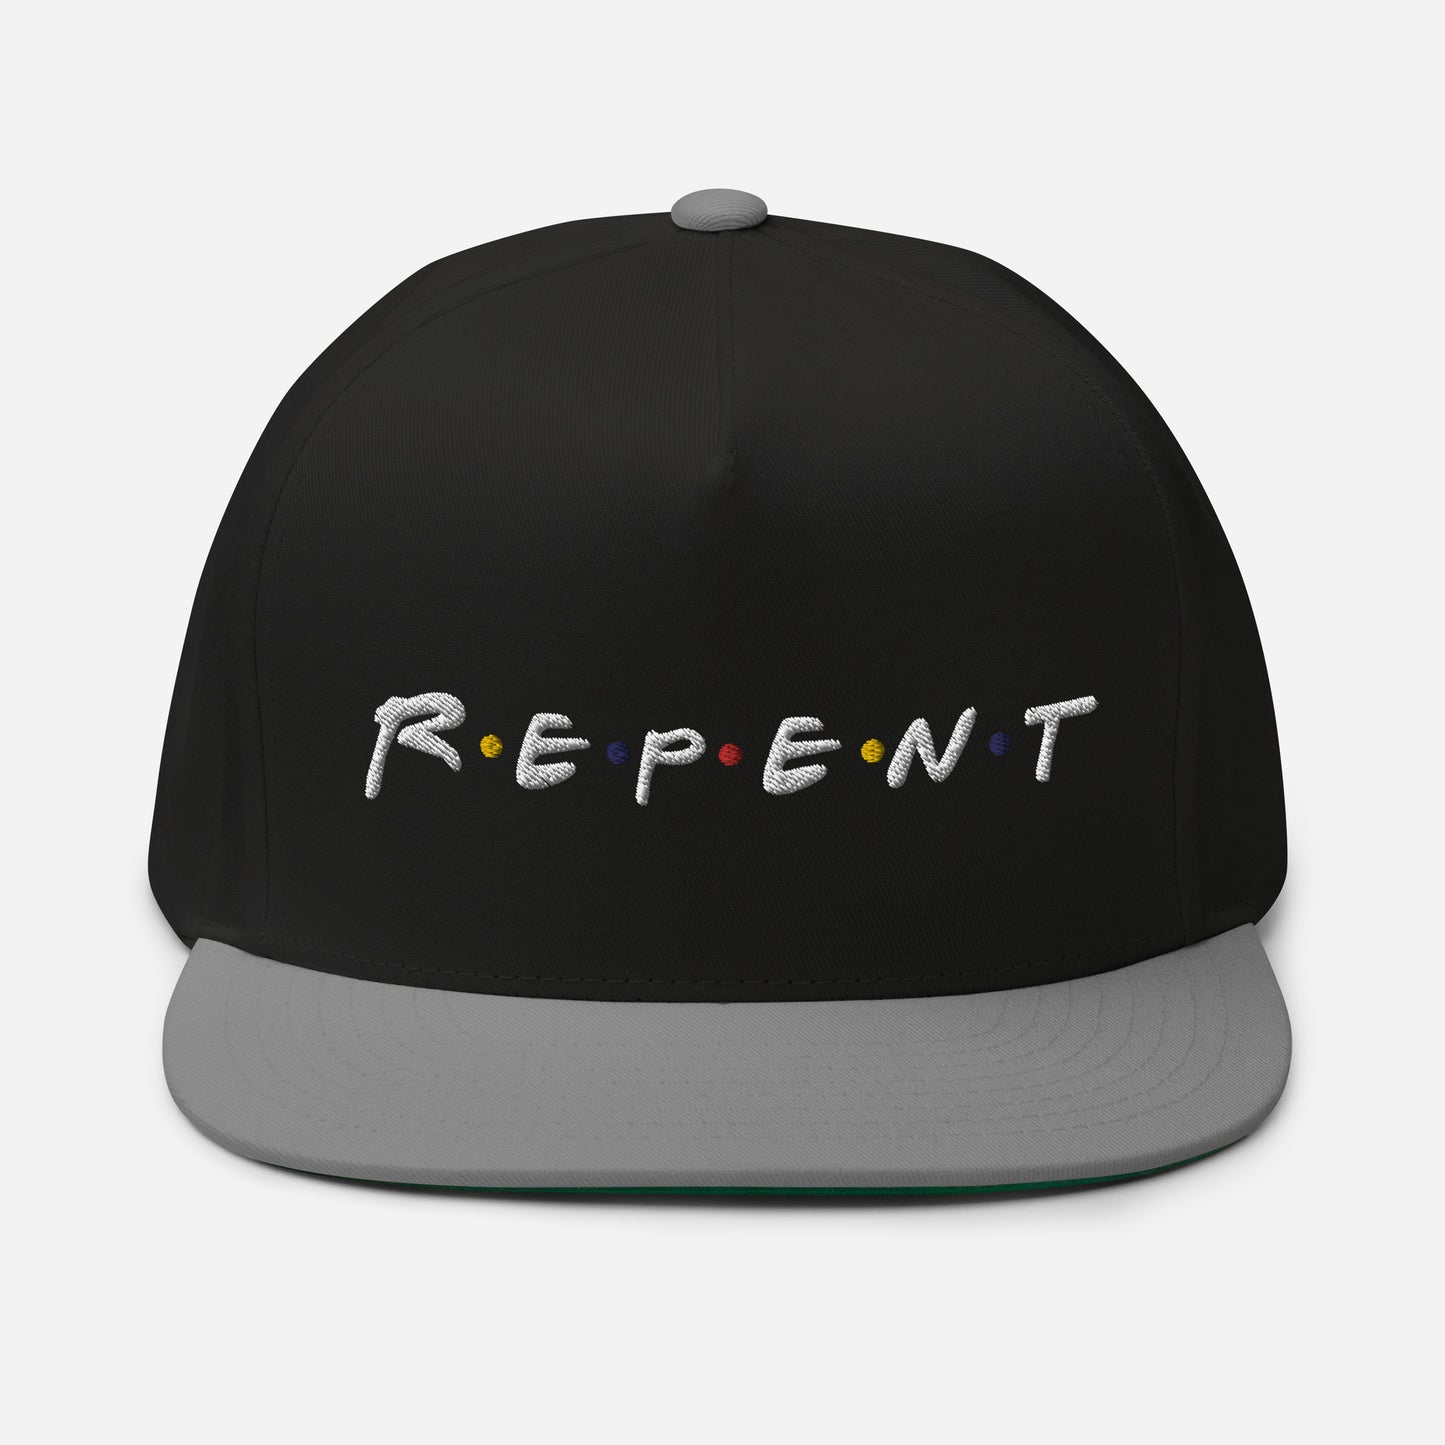 Repent Flat Bill Cap